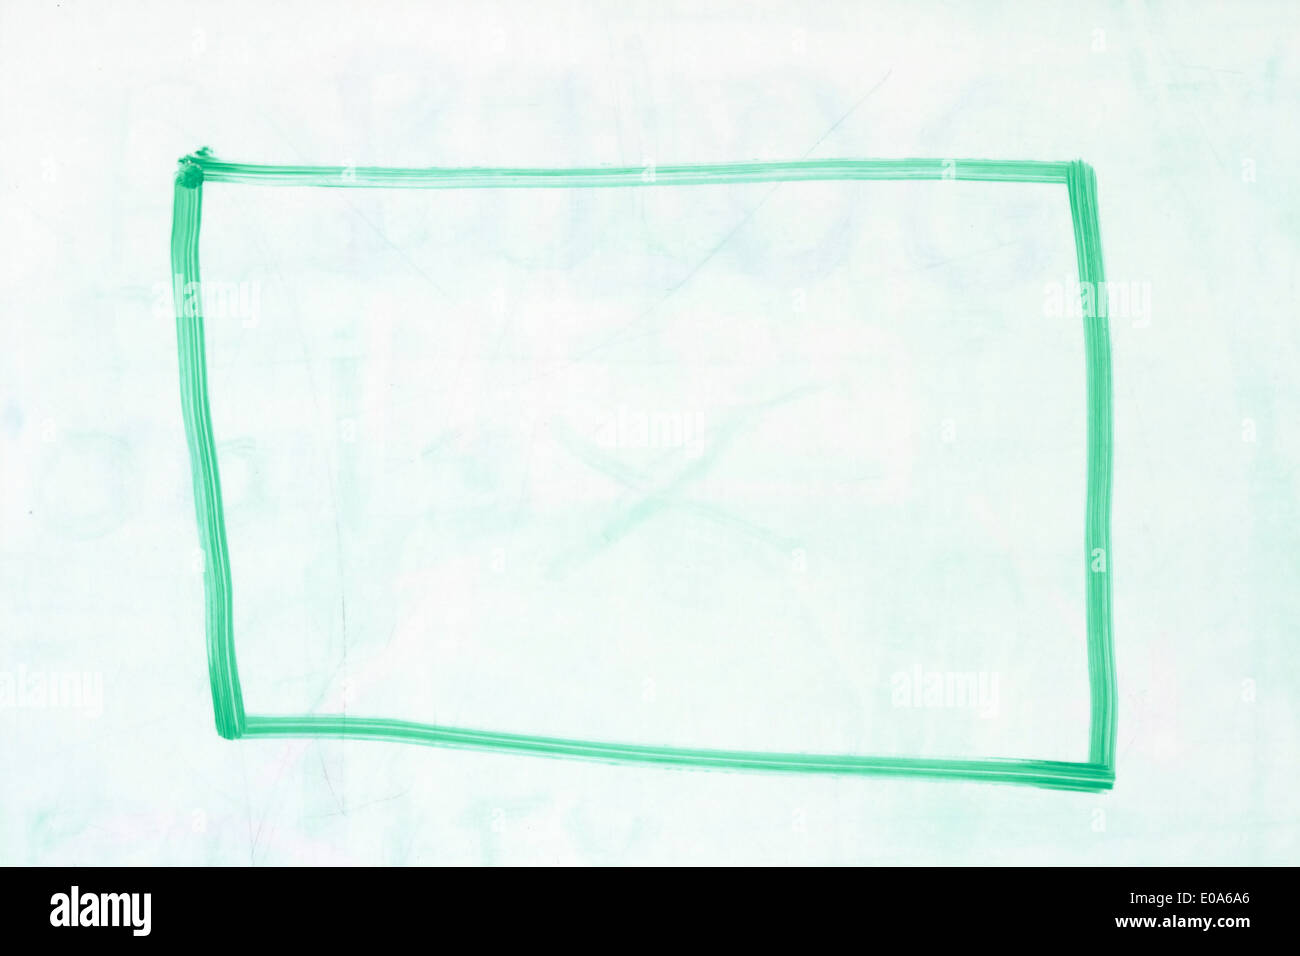 rechteckige Feld Gliederung in grünen trockenen löschen Marker auf eine gebrauchte weiße Tafel Stockfoto